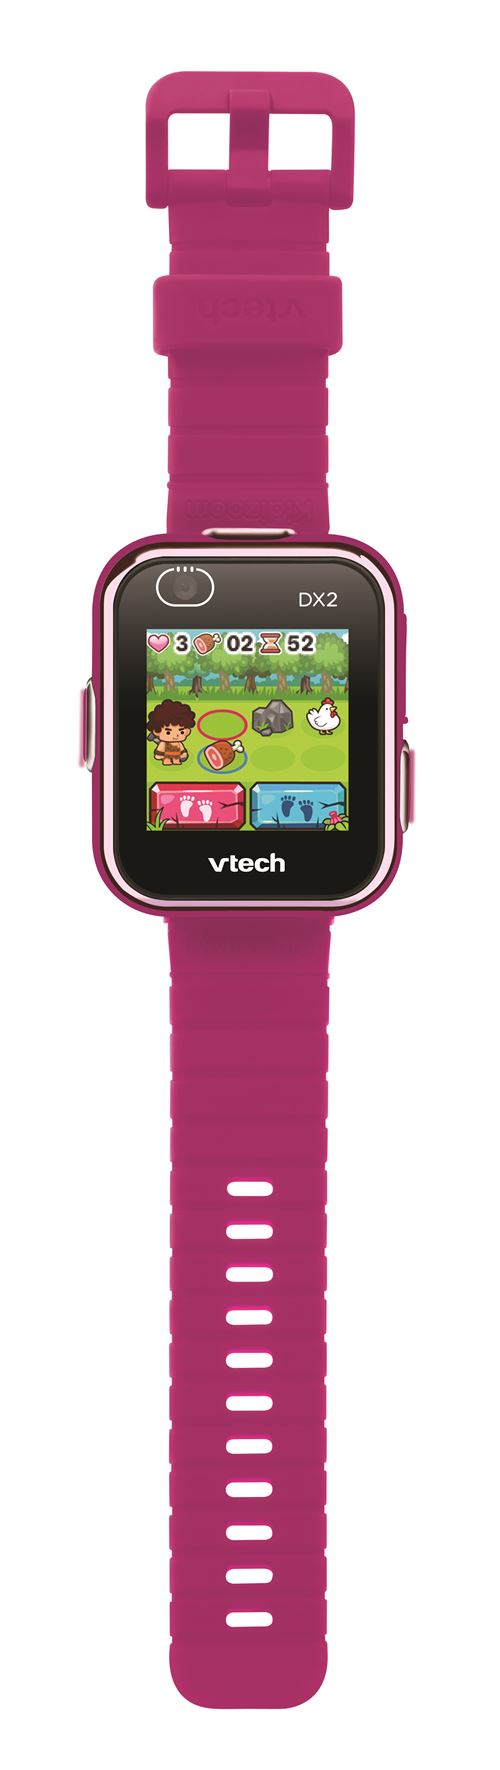 Montre kidizoom Smartwatch Connect DX2 VTECH : la montre à Prix